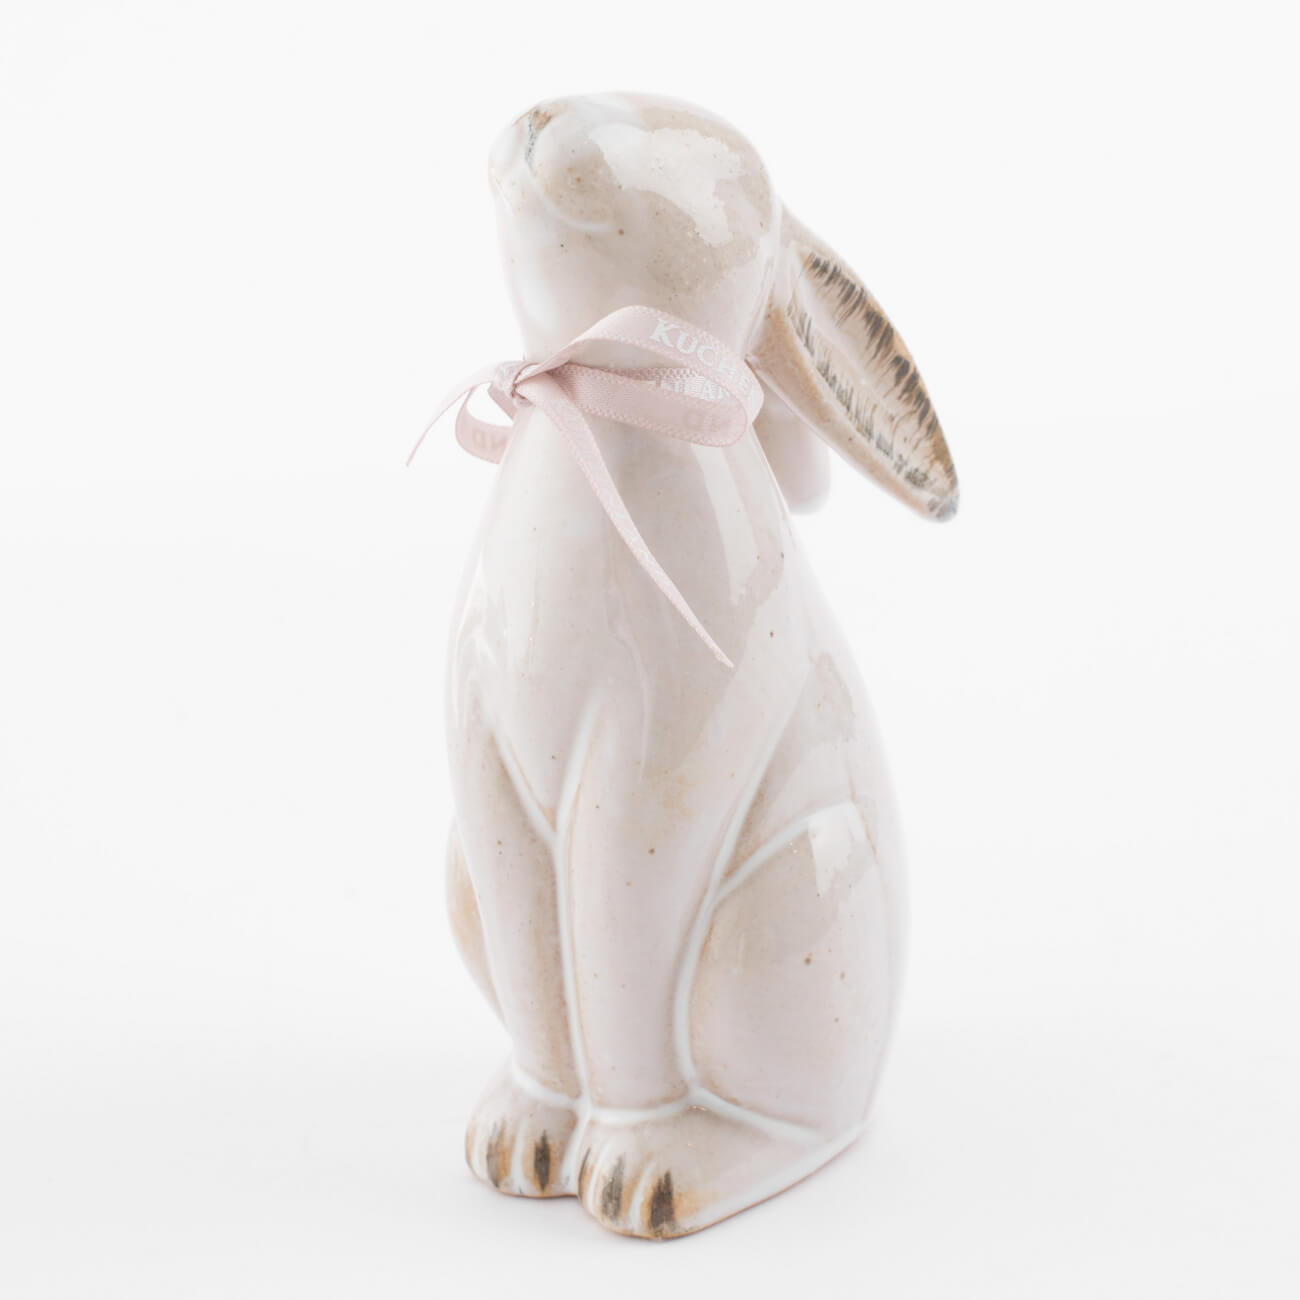 статуэтка с подсветкой 13 см фарфор p белая кролик с ами easter Статуэтка, 14 см, фарфор P, бежевая, Кролик сидит, Natural Easter